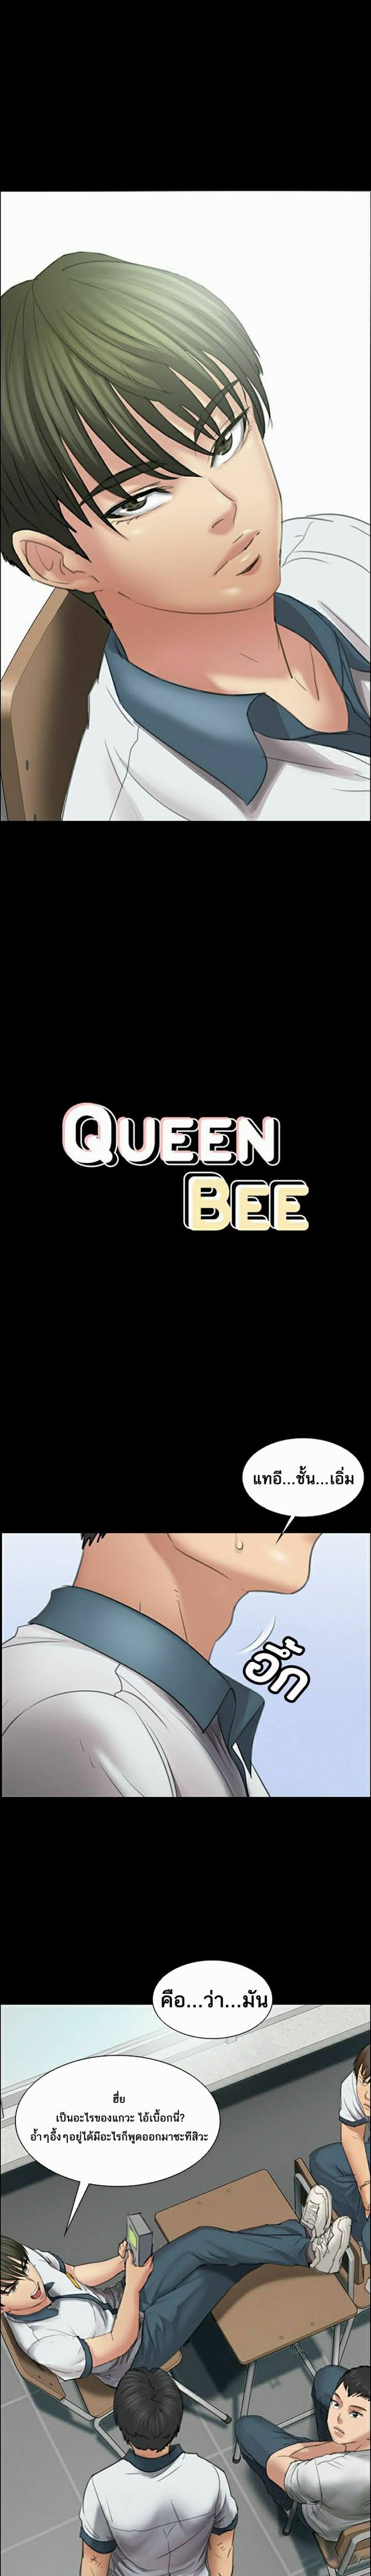 Queen Bee 13 (4)